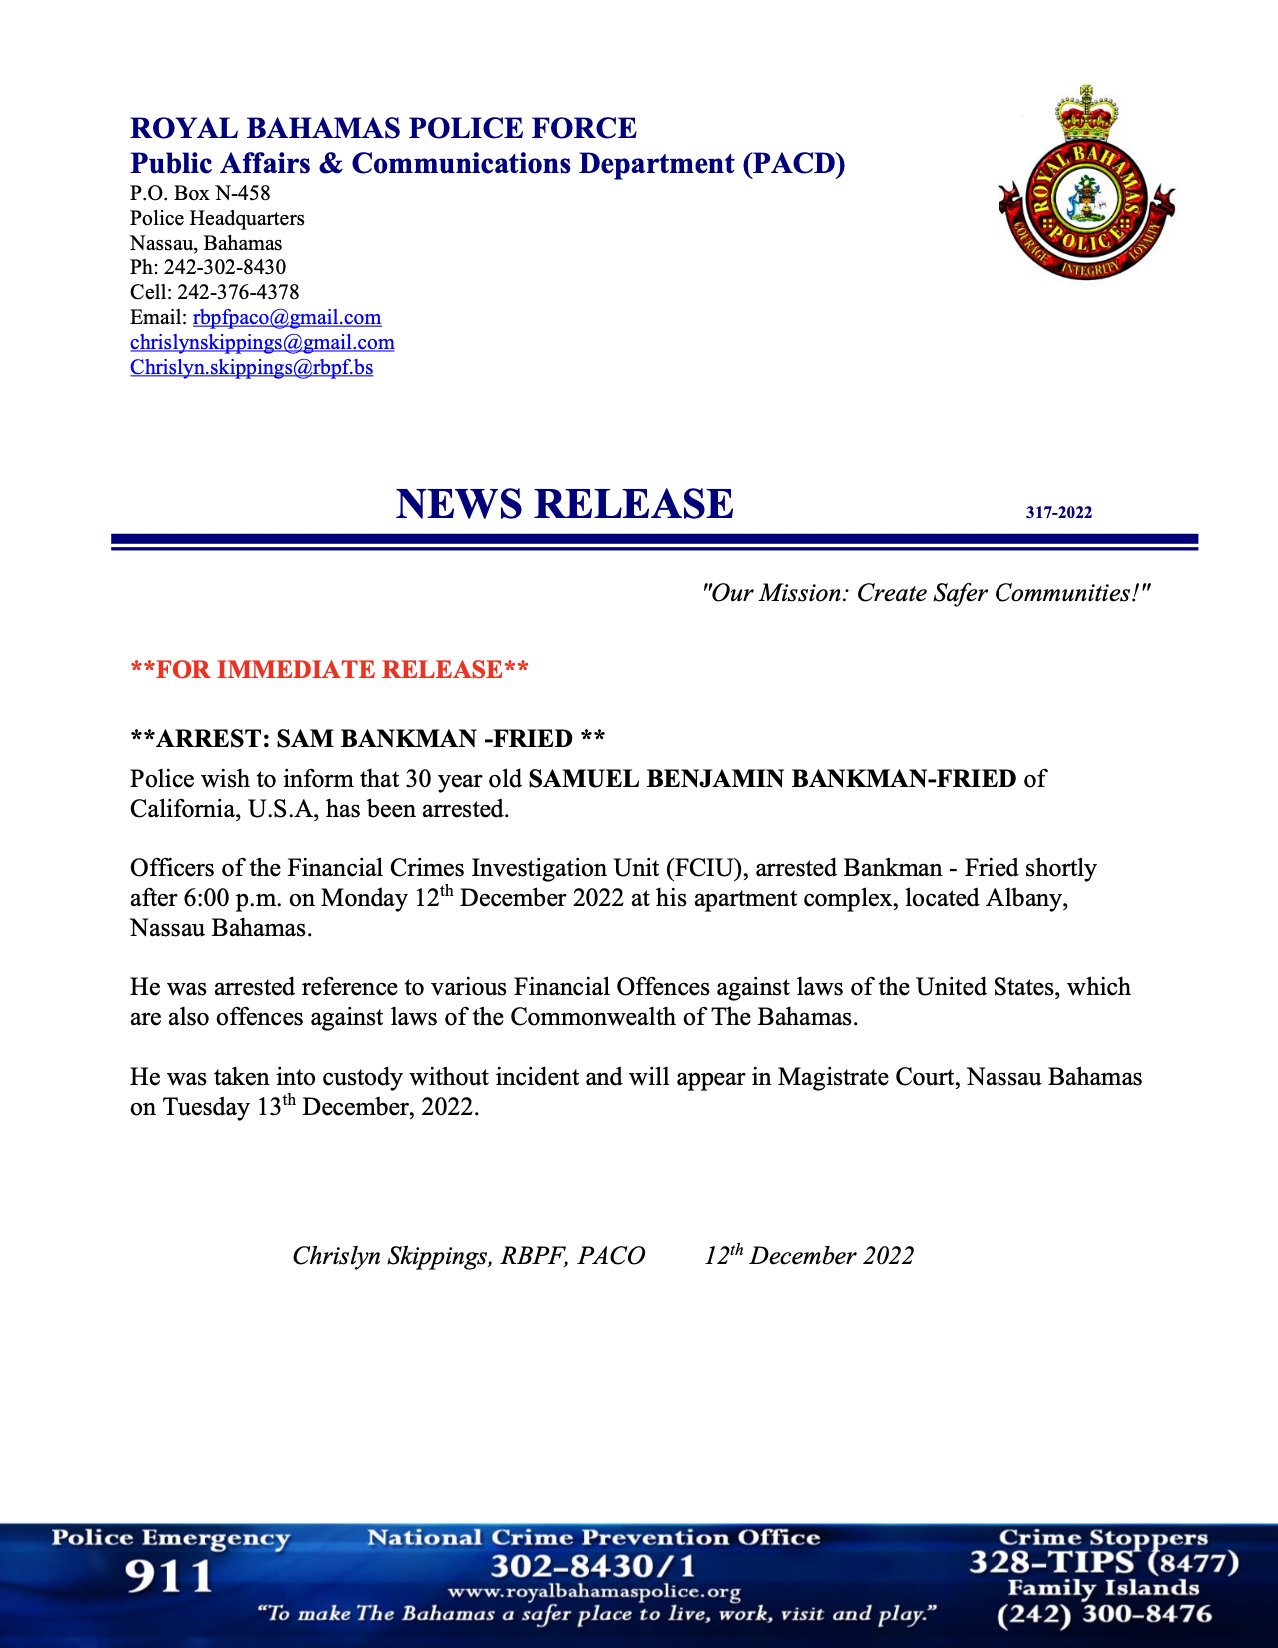 Royal Bahamas Police Force statement on Sam Bankman-Fried arrest